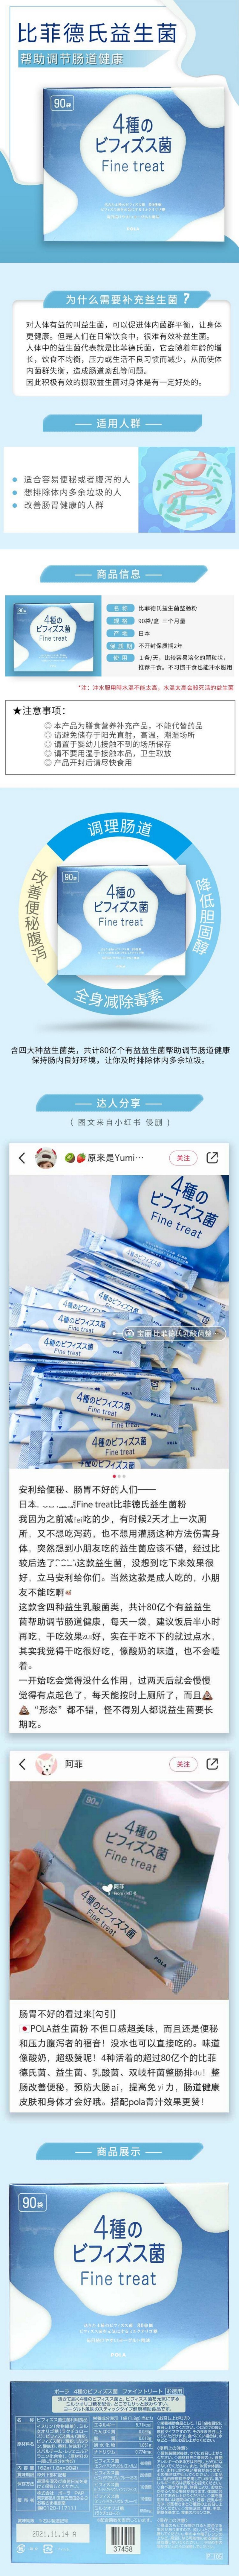 【日本直郵】POLA Fine treat 益生菌乳酸菌粉 3個月量 90袋入